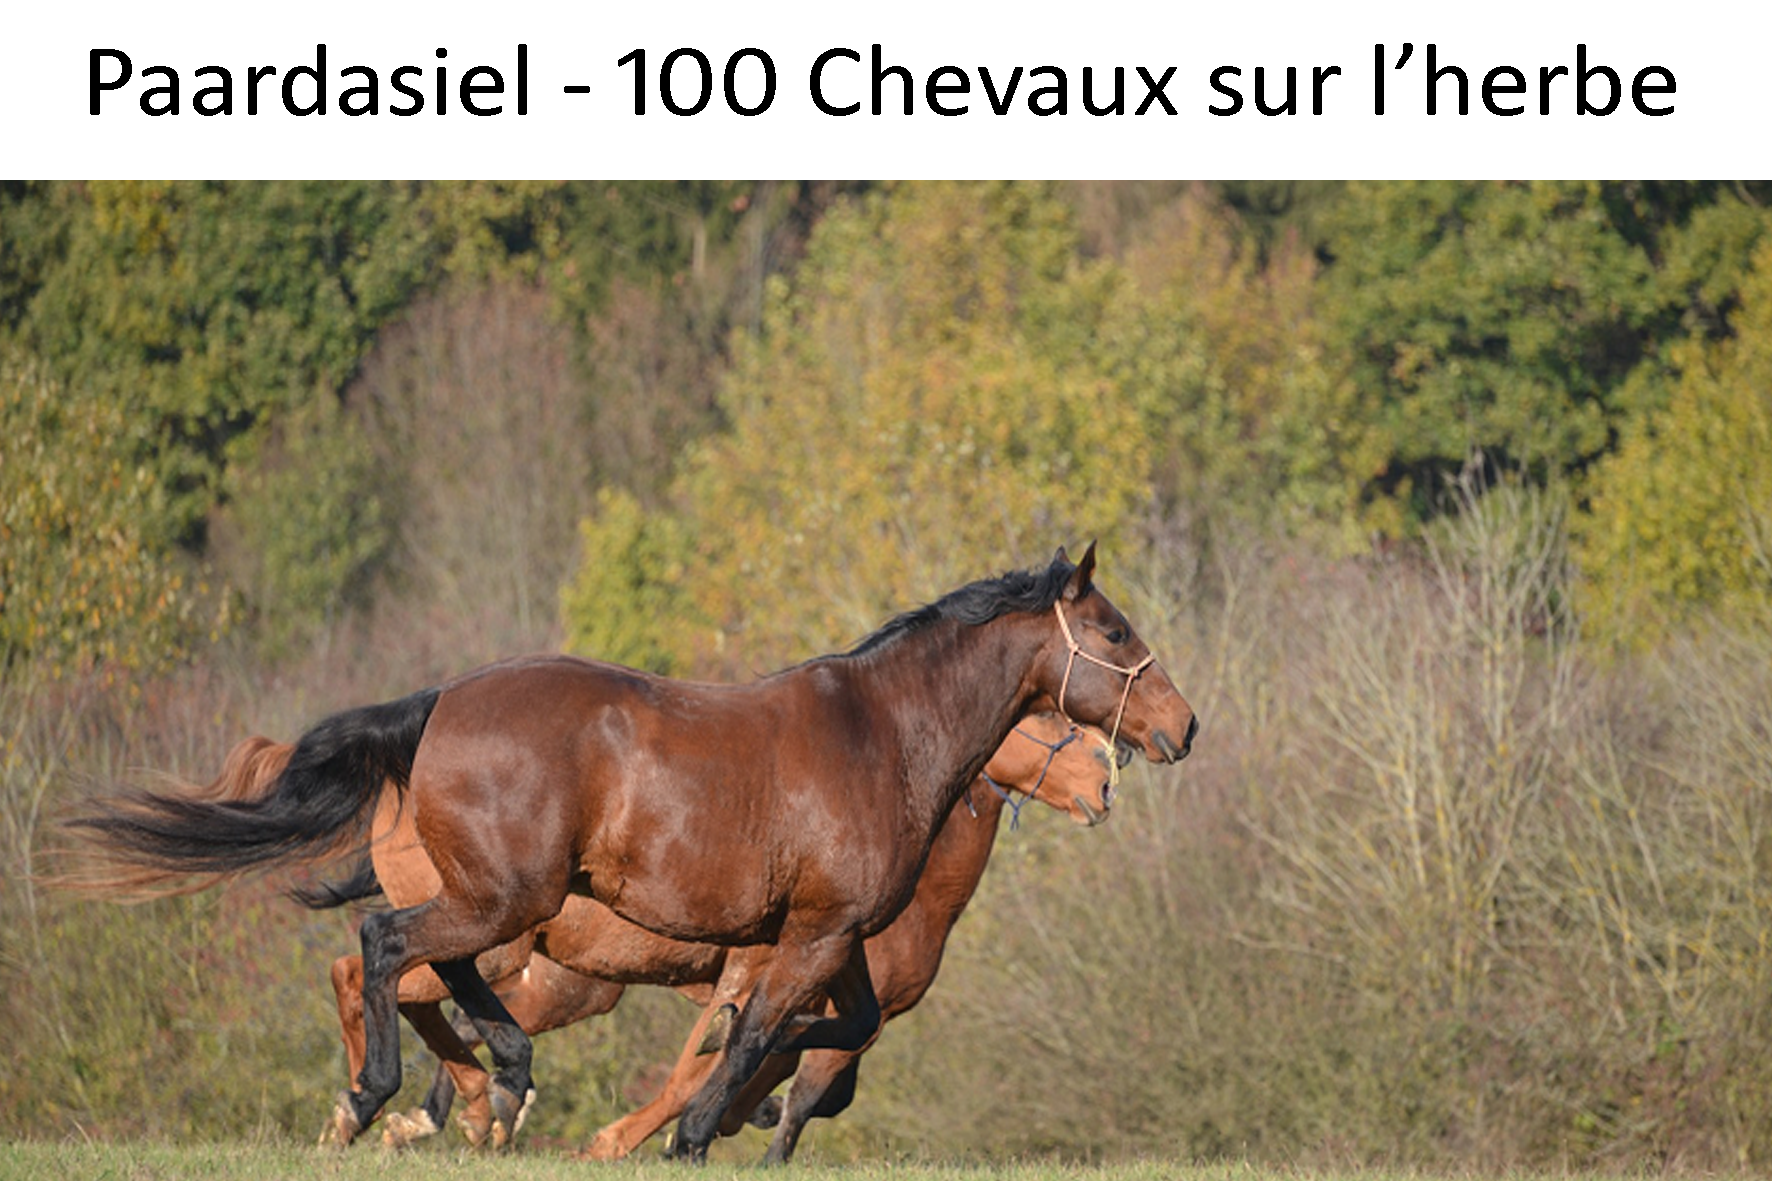 Paardasiel - 100 chevaux sur l'herbe